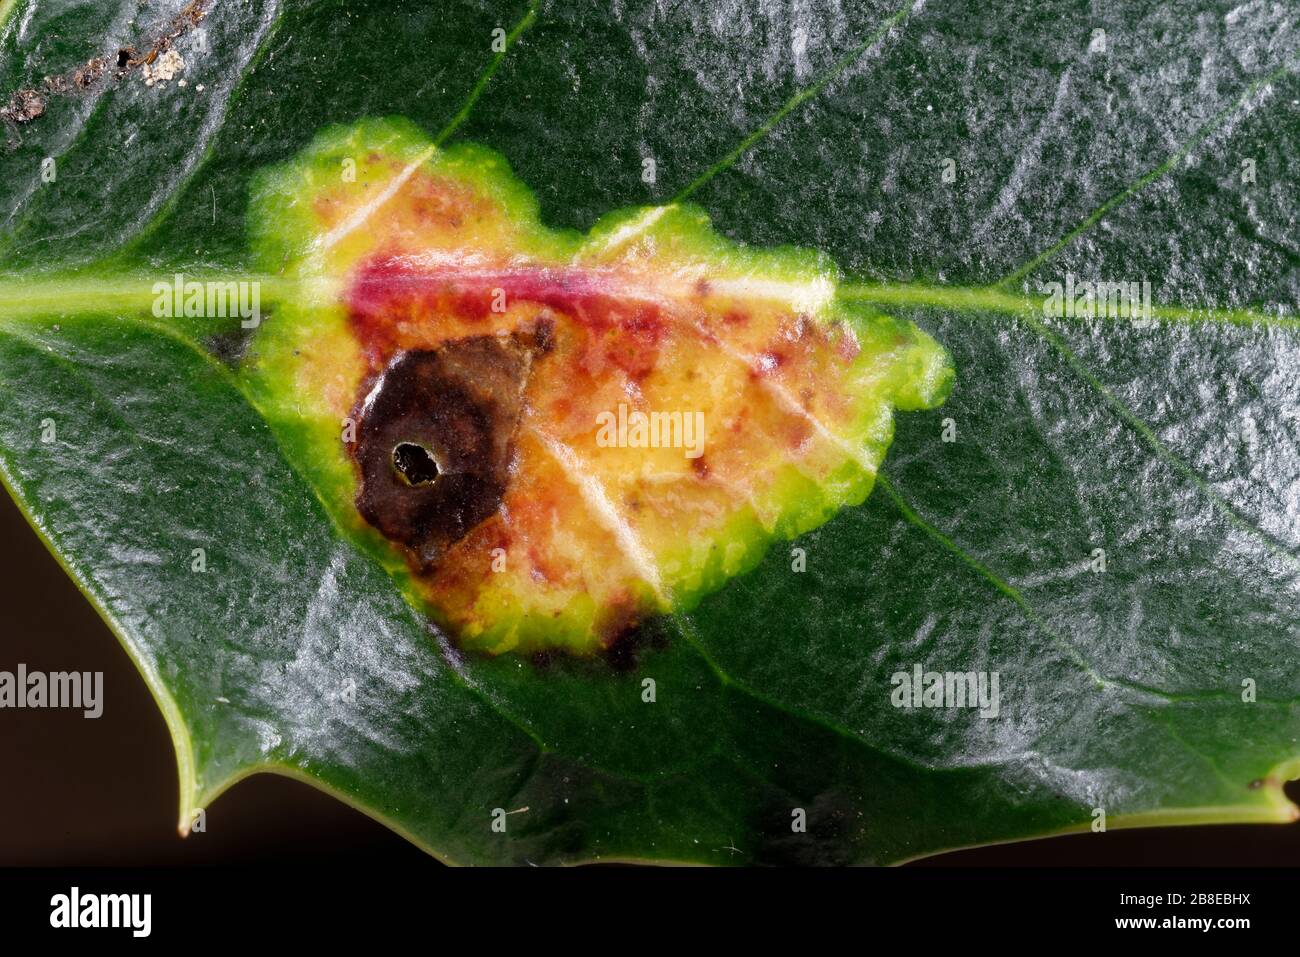 Holly Leaf Miner - Phytomyza ilicis damage on Holly Leaf - Ilex aquifolium, with emergence hole Stock Photo